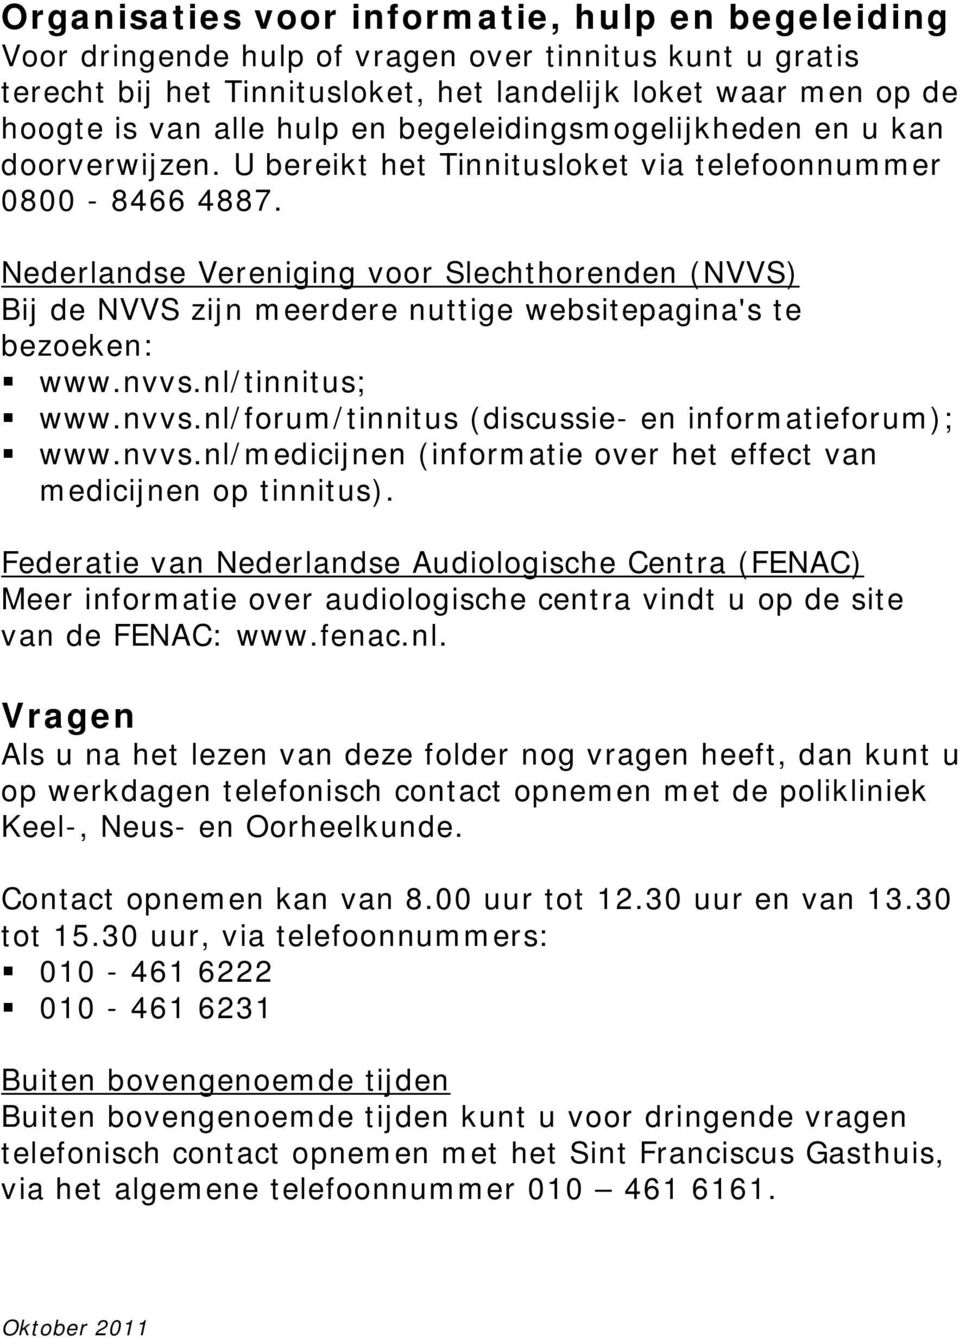 Nederlandse Vereniging voor Slechthorenden (NVVS) Bij de NVVS zijn meerdere nuttige websitepagina's te bezoeken: www.nvvs.nl/tinnitus; www.nvvs.nl/forum/tinnitus (discussie- en informatieforum); www.